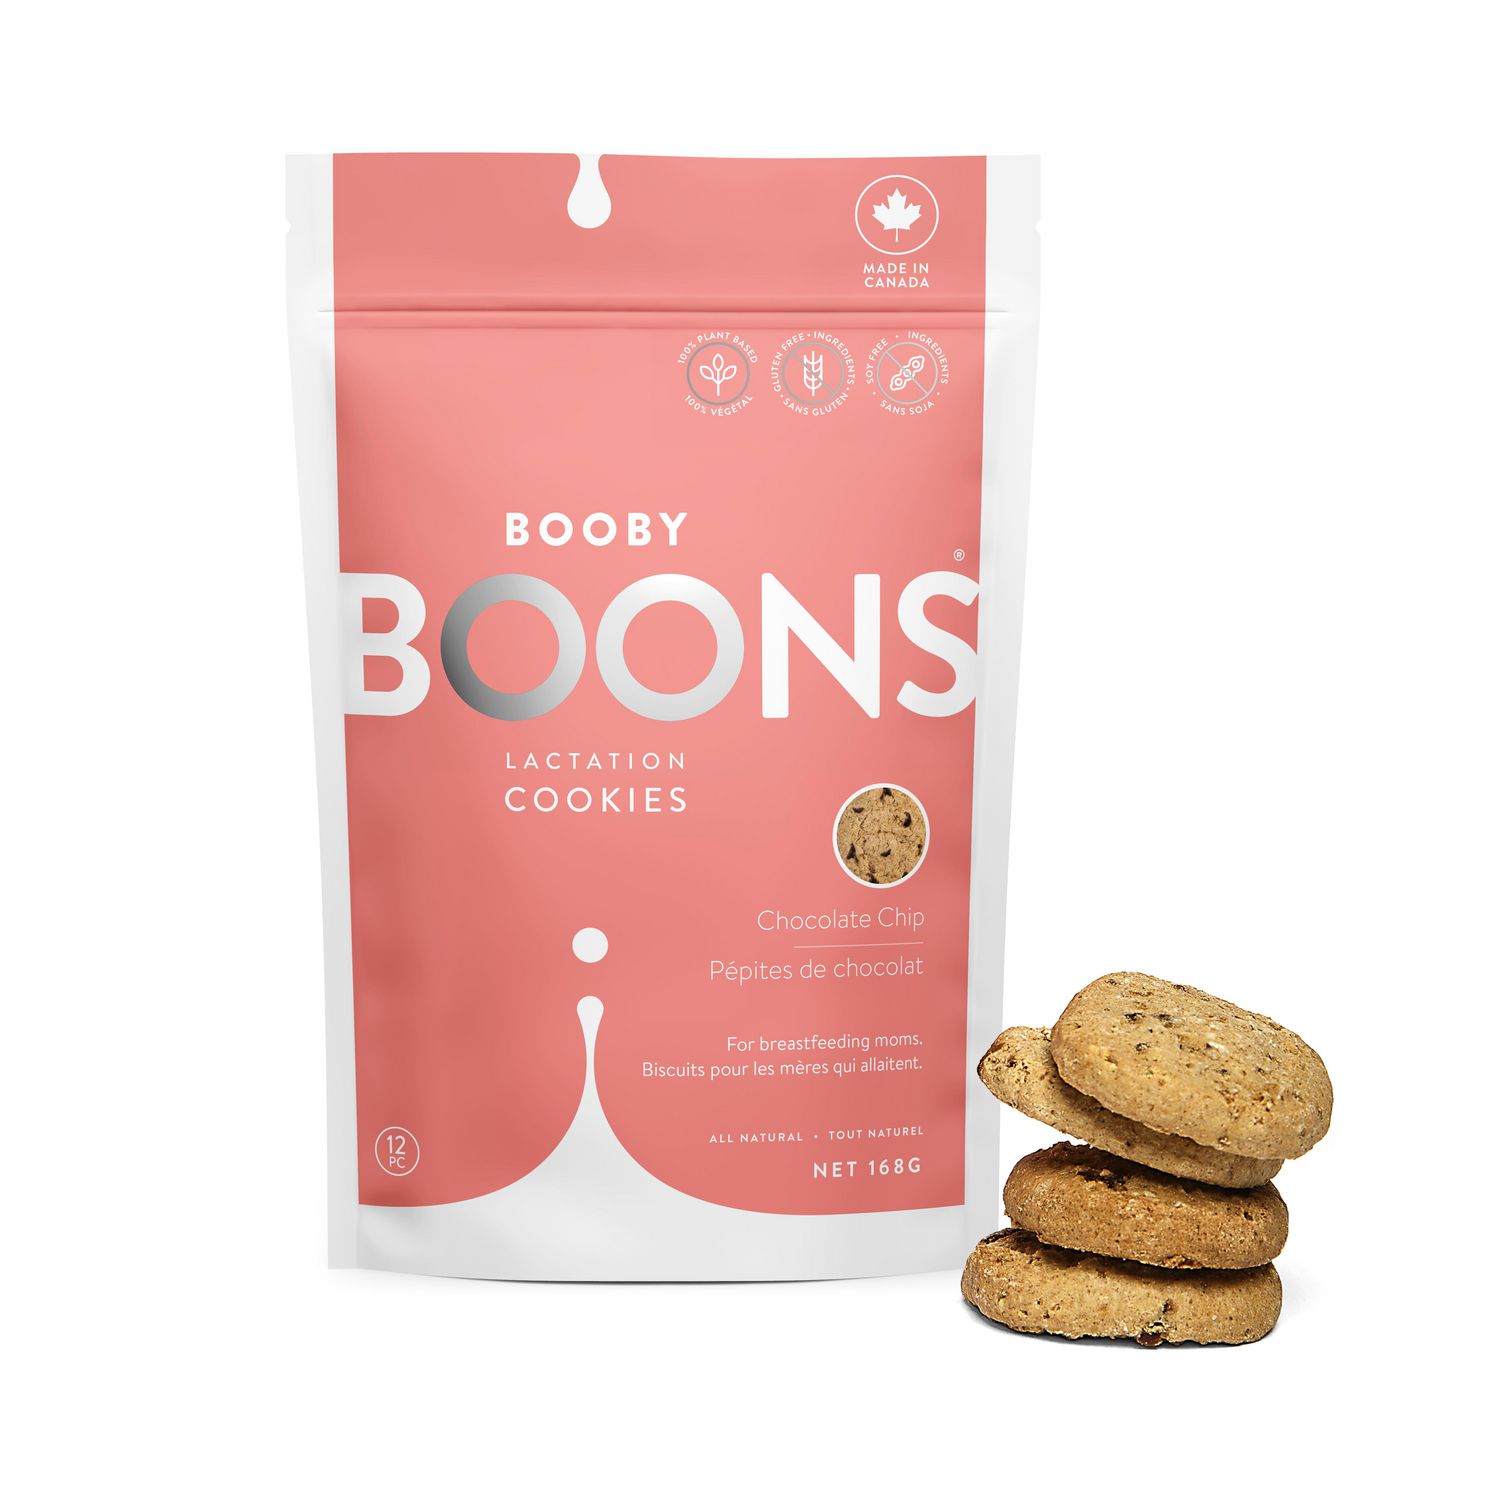 Les meilleurs produits de lactation - Biscuits de lactation par Booby Boons 